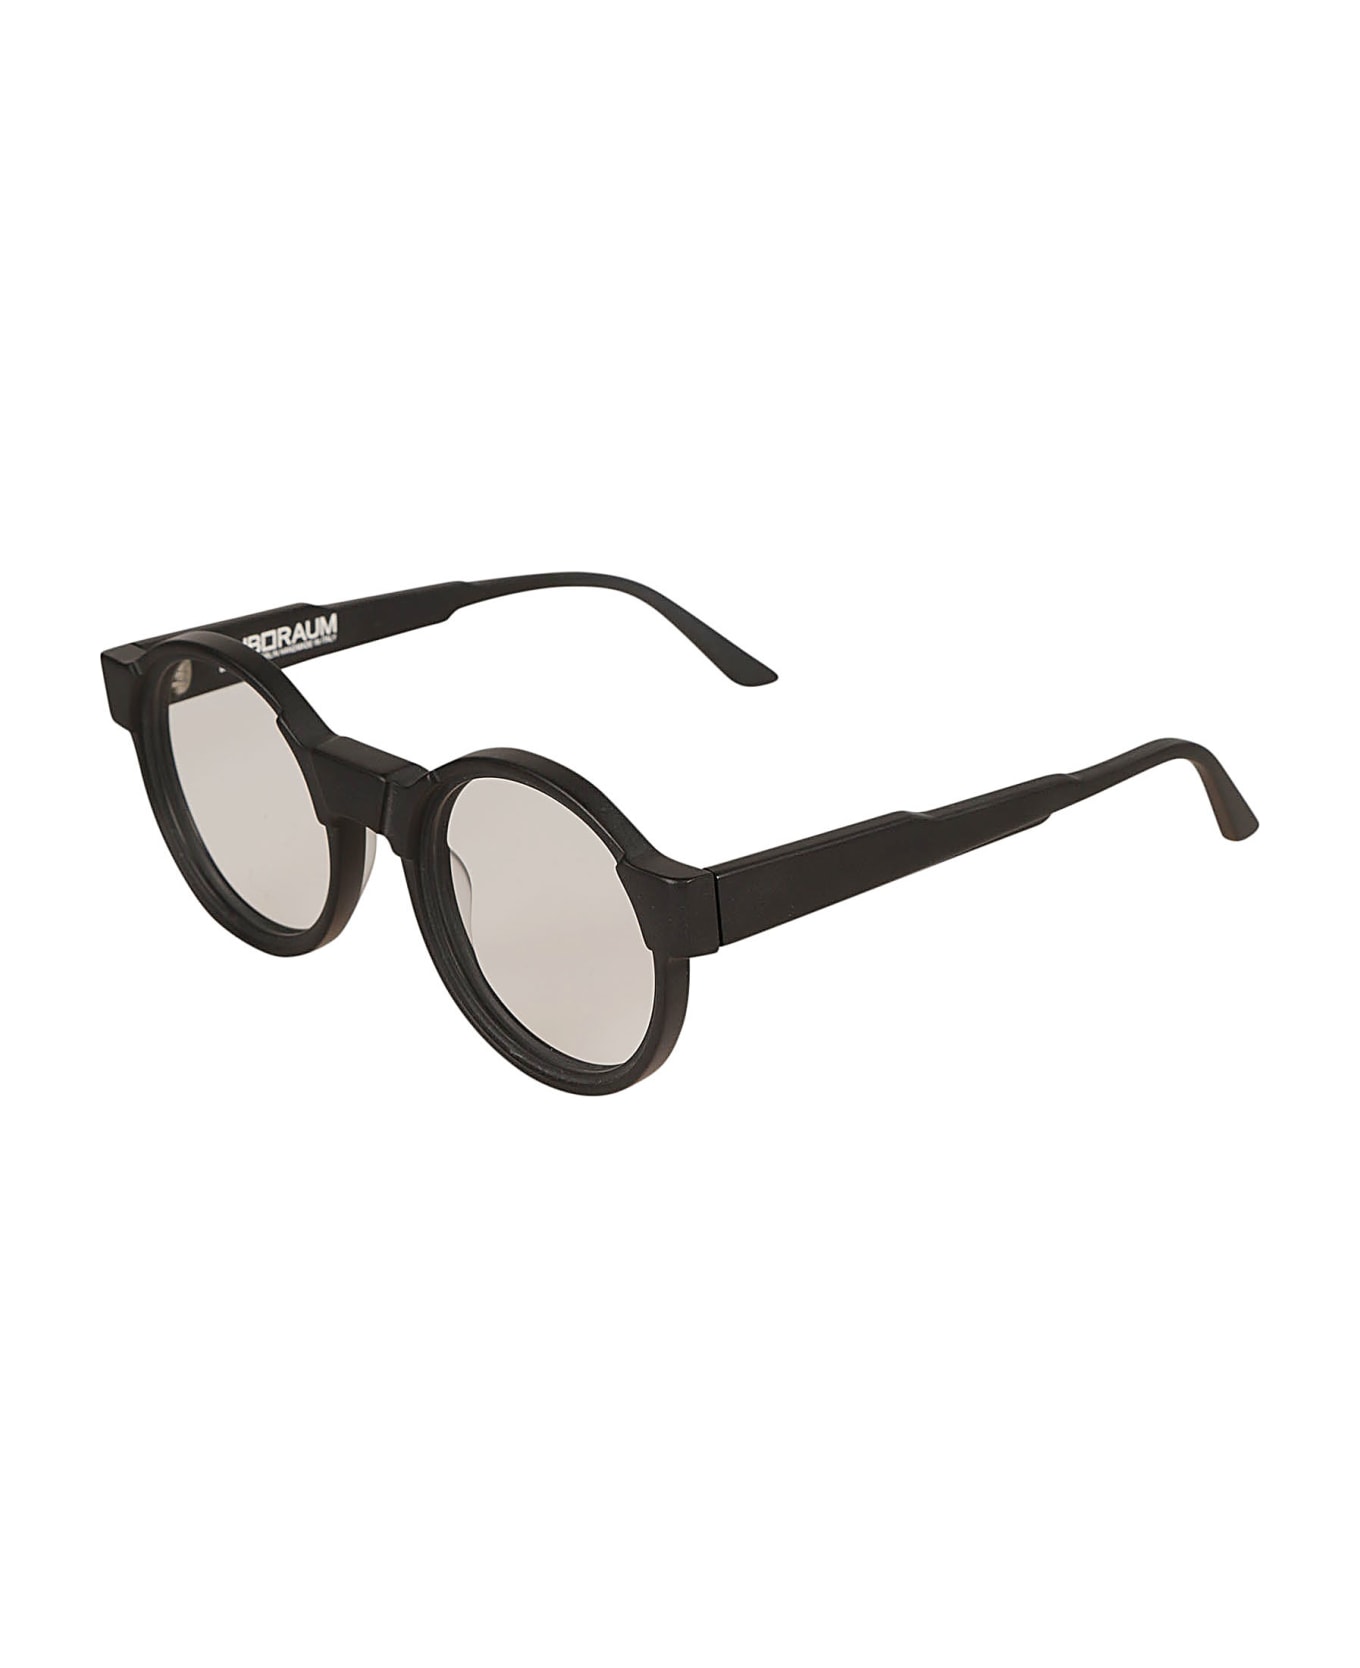 Kuboraum K10 Glasses Glasses - black